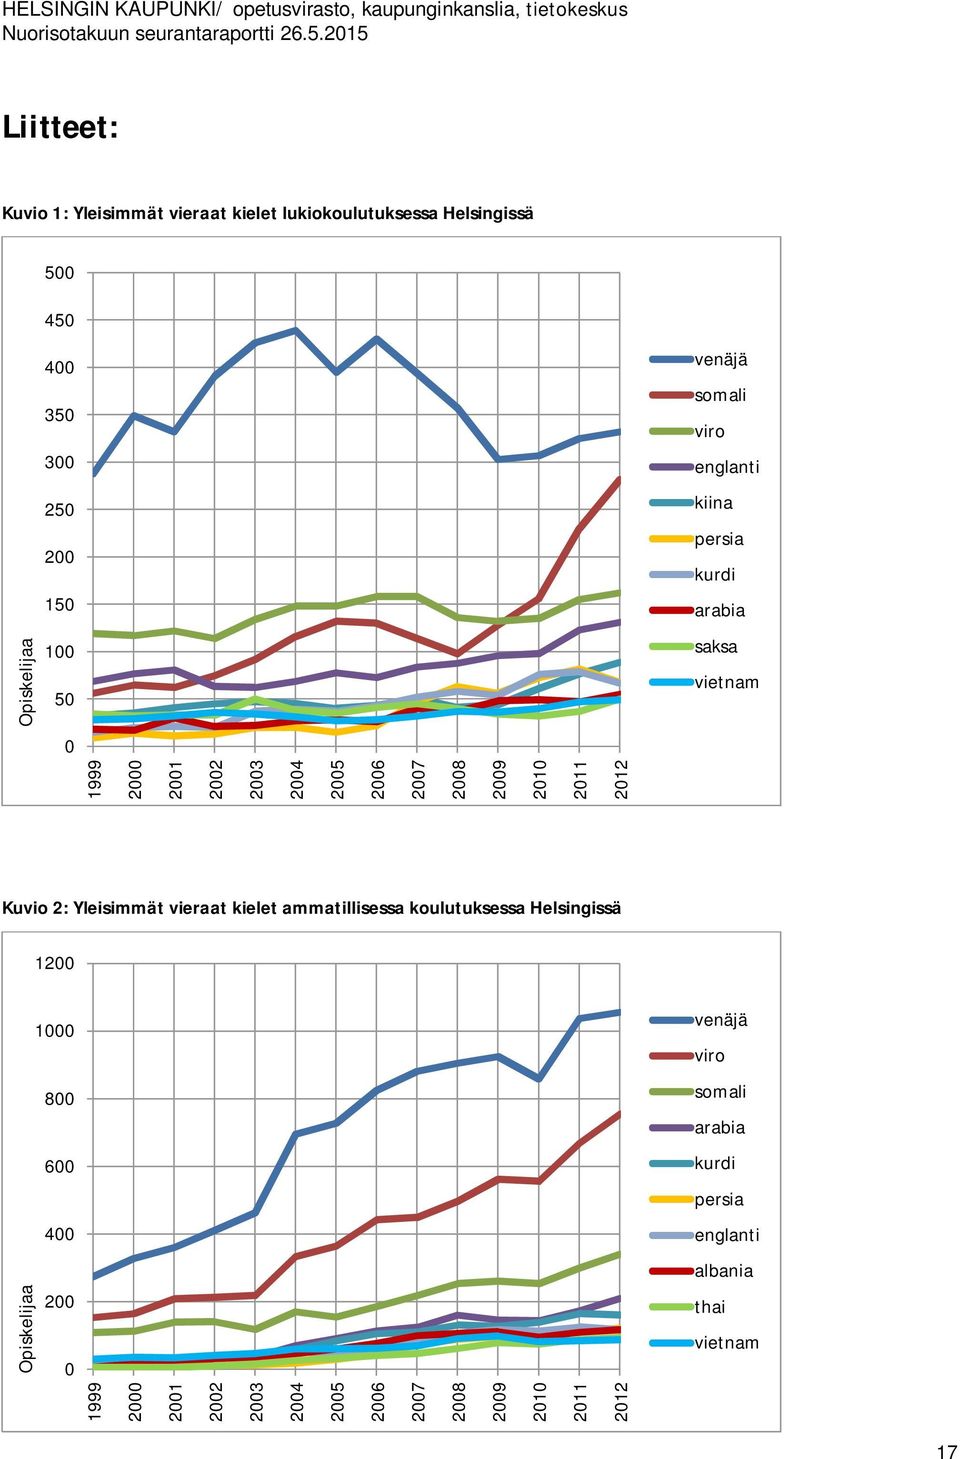 2011 2012 Kuvio 2: Yleisimmät vieraat kielet ammatillisessa koulutuksessa Helsingissä 1200 1000 venäjä viro 800 somali arabia 600